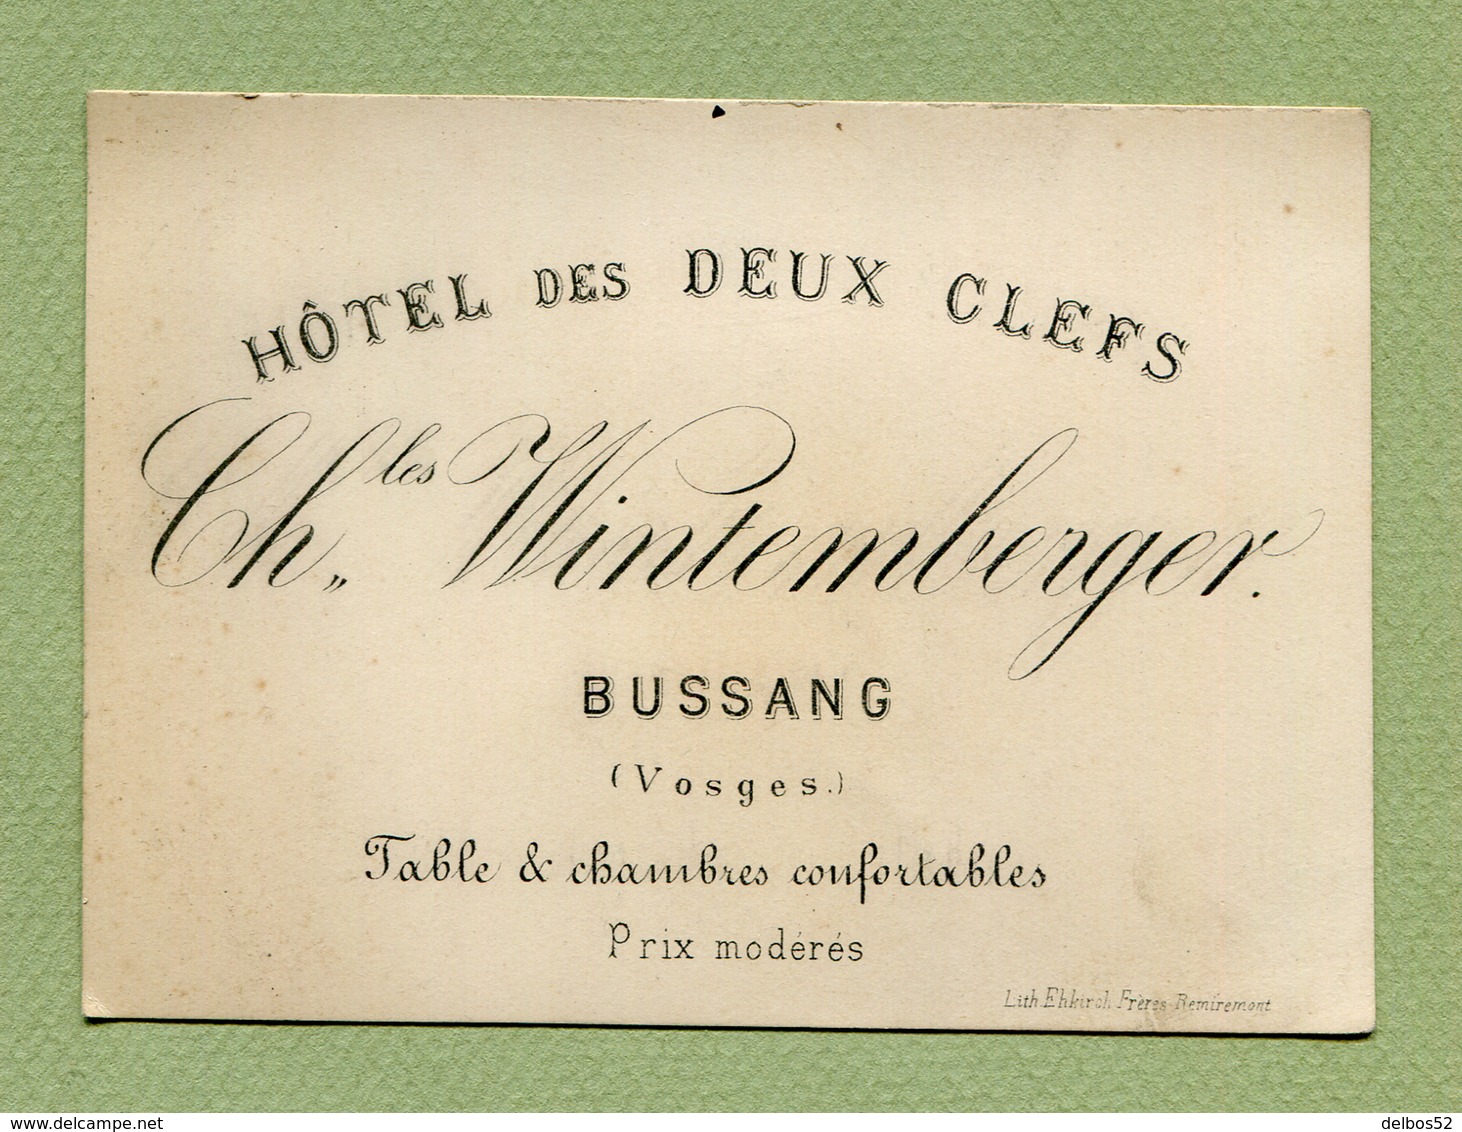 BUSSANG  (88) : " HÔTEL DES DEUX CLEFS - Ch. WINTEMBERGER "  (XIXème Siècle) - Visiting Cards